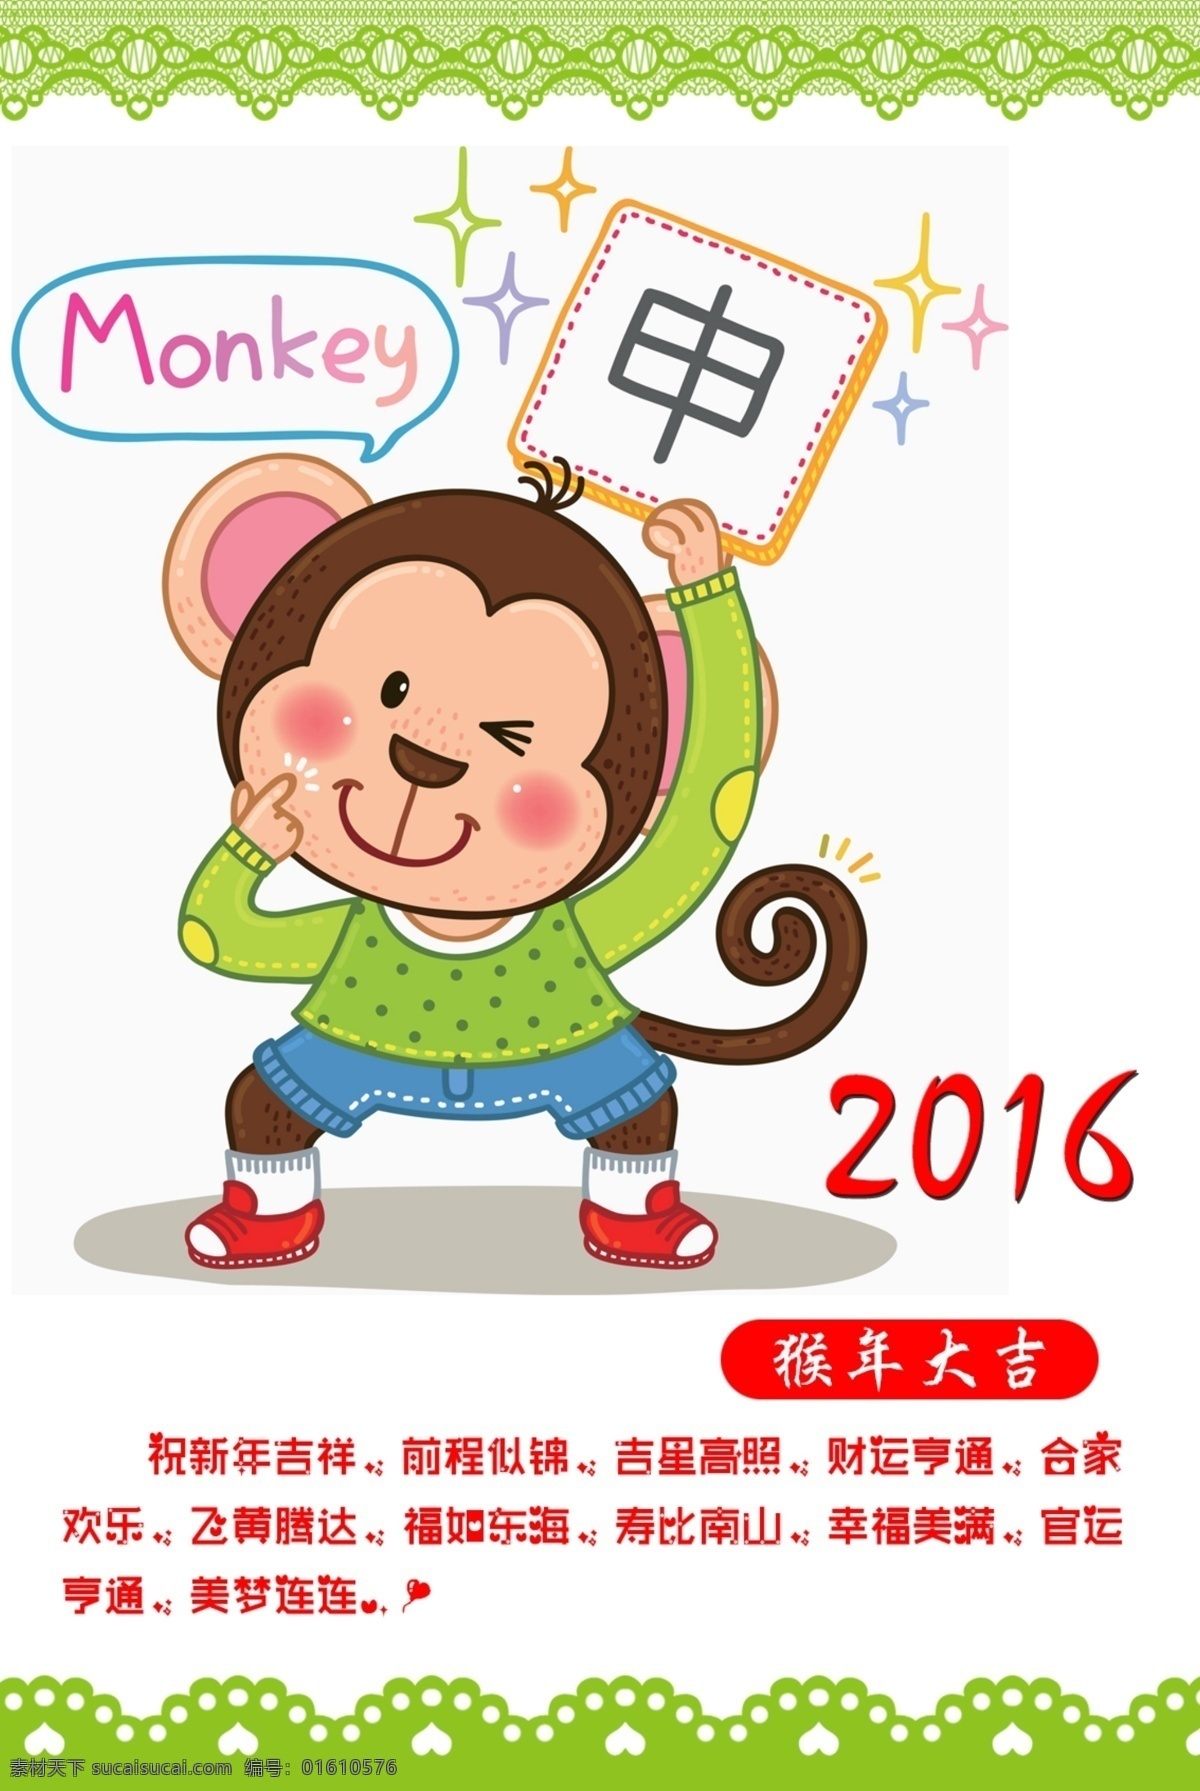 猴年大吉 psd源文件 2016猴年 猴子 猴年快乐 申猴 猴年日历首页 白色